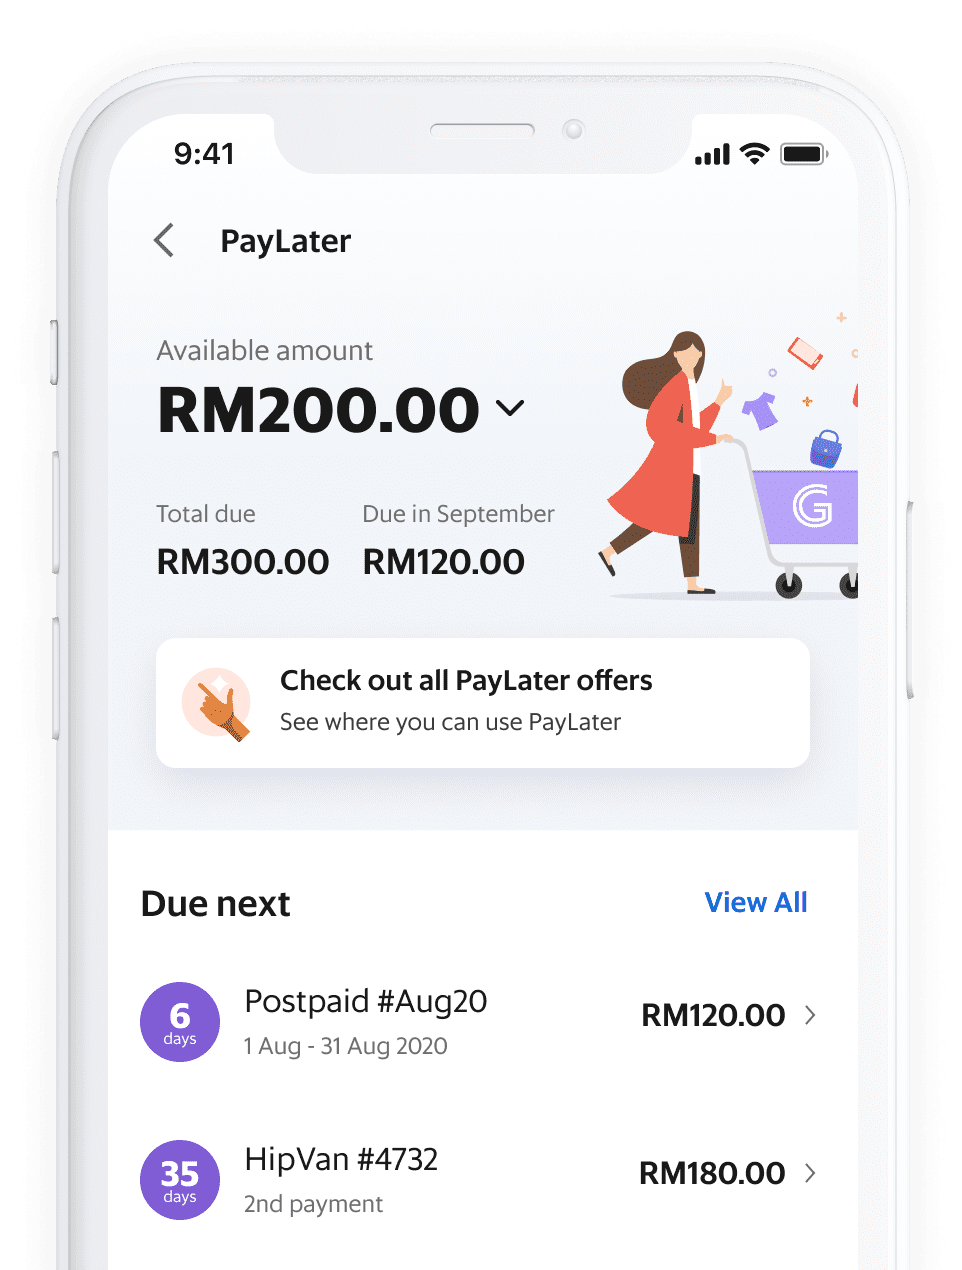 Shopee paylater malaysia